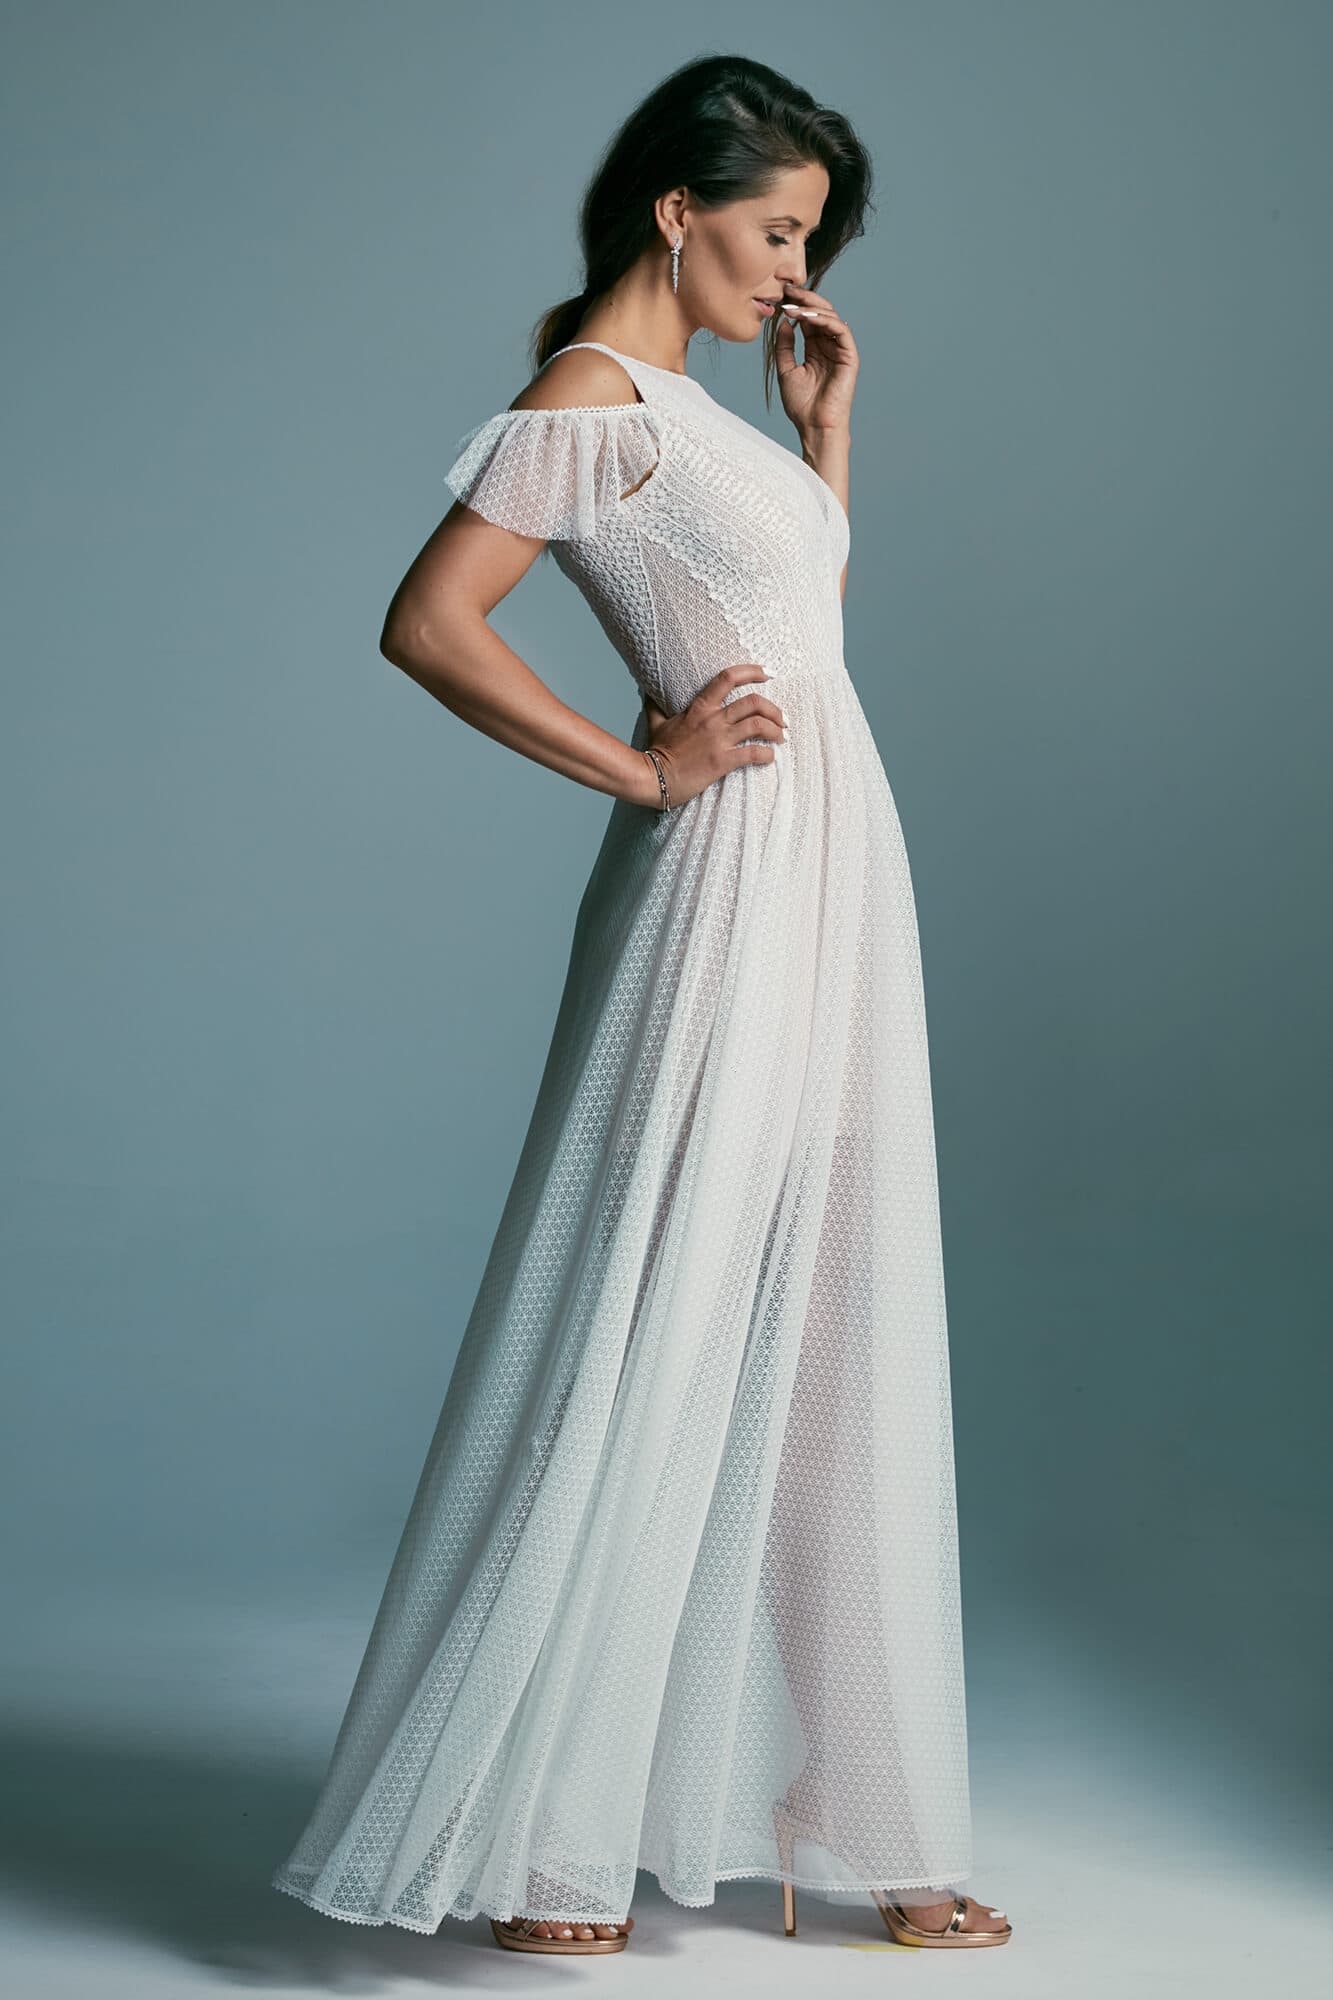 Zachowawcza, skromna i dziewczęca suknia ślubna Santorini 2